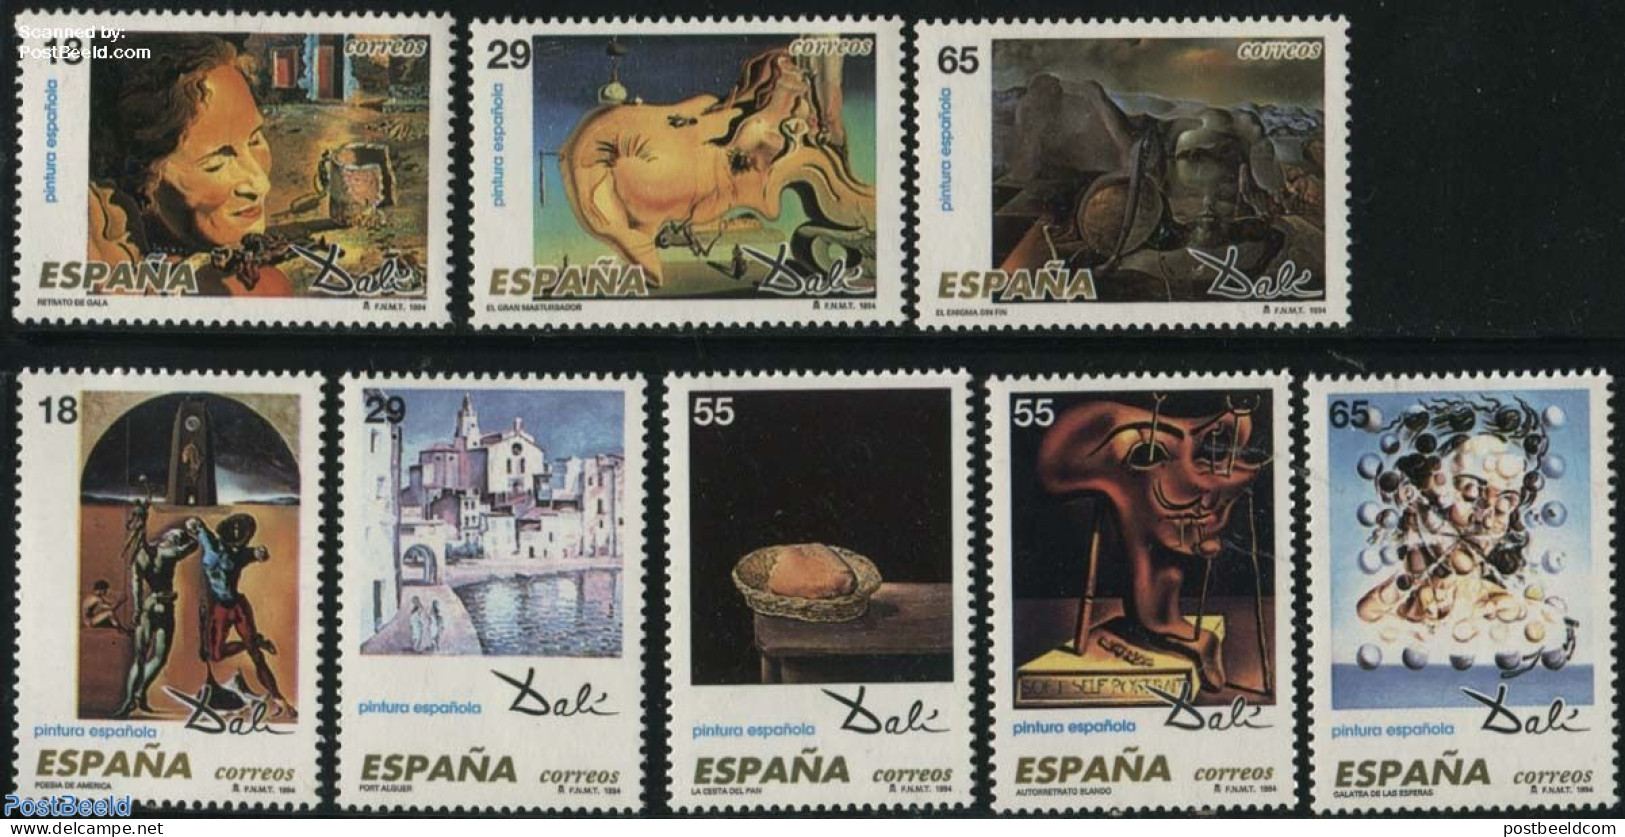 Spain 1994 Salvador Dali 8v, Mint NH, Art - Modern Art (1850-present) - Salvador Dali - Nuevos